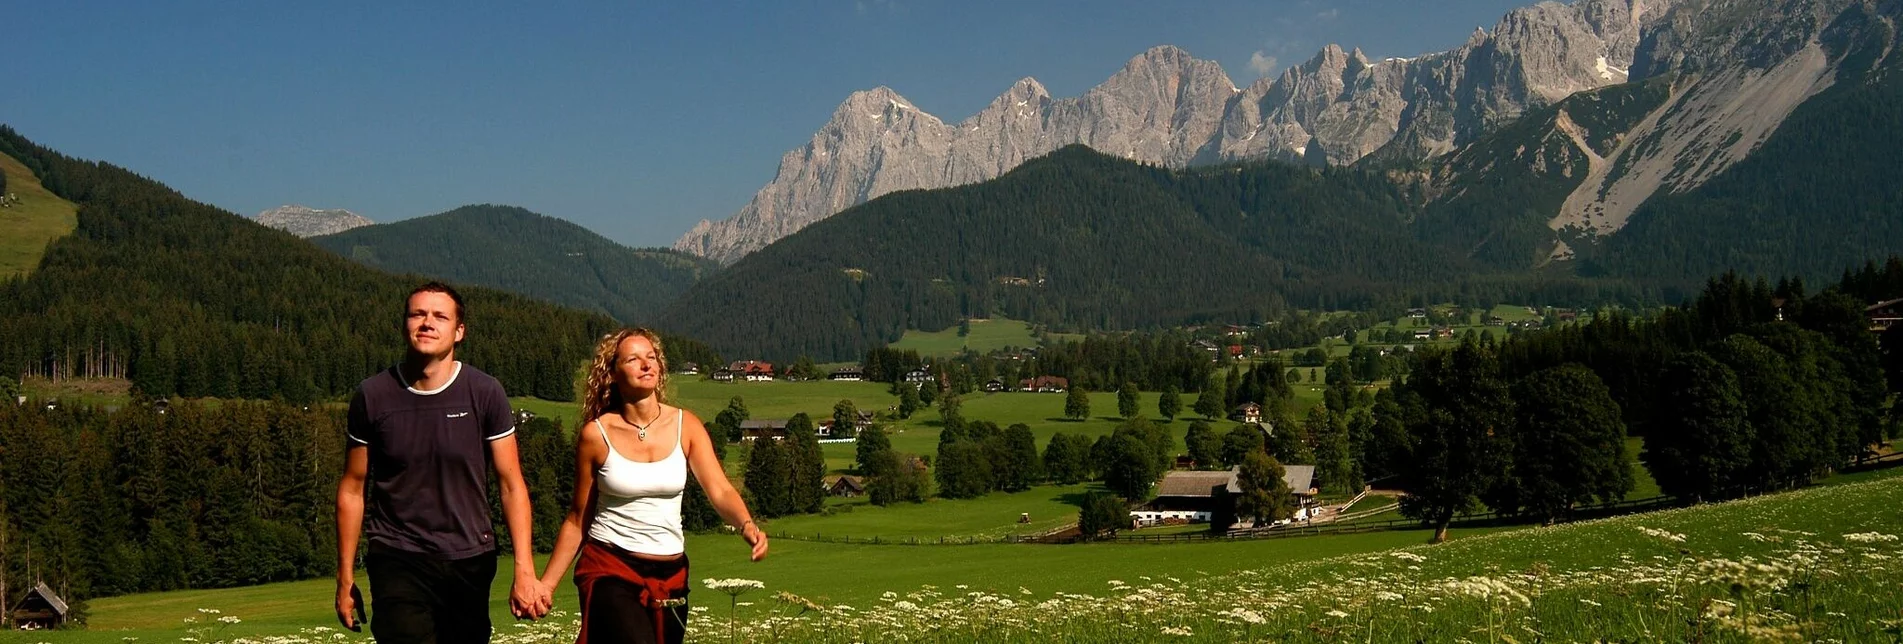 Hiking route Panorama Loop Trail West - Touren-Impression #1 | © Erlebnisregion Schladming-Dachstein